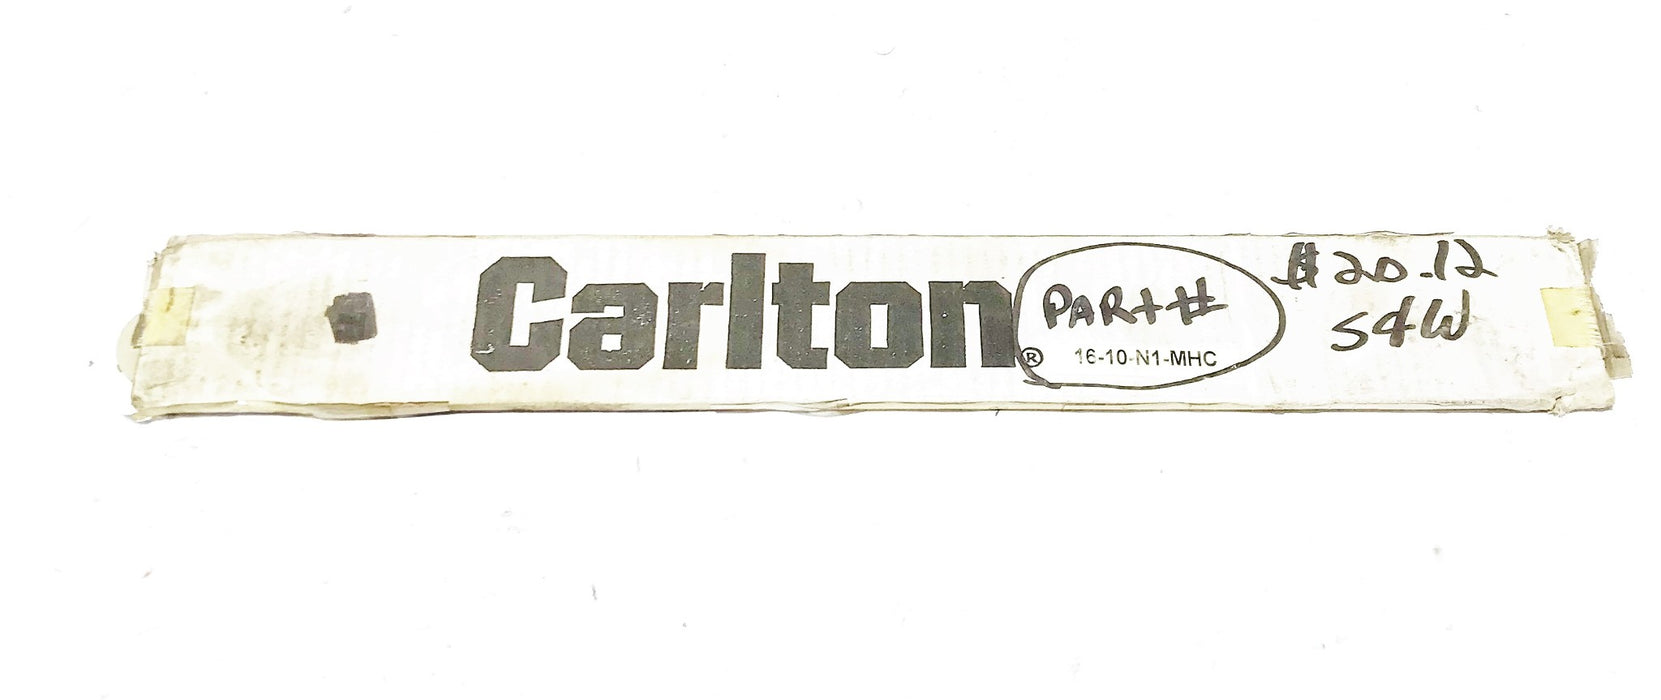 Carlton "Mini Hobby Champ" Laminated Chainsaw Bar Guide 16-10-N1-MHC NOS